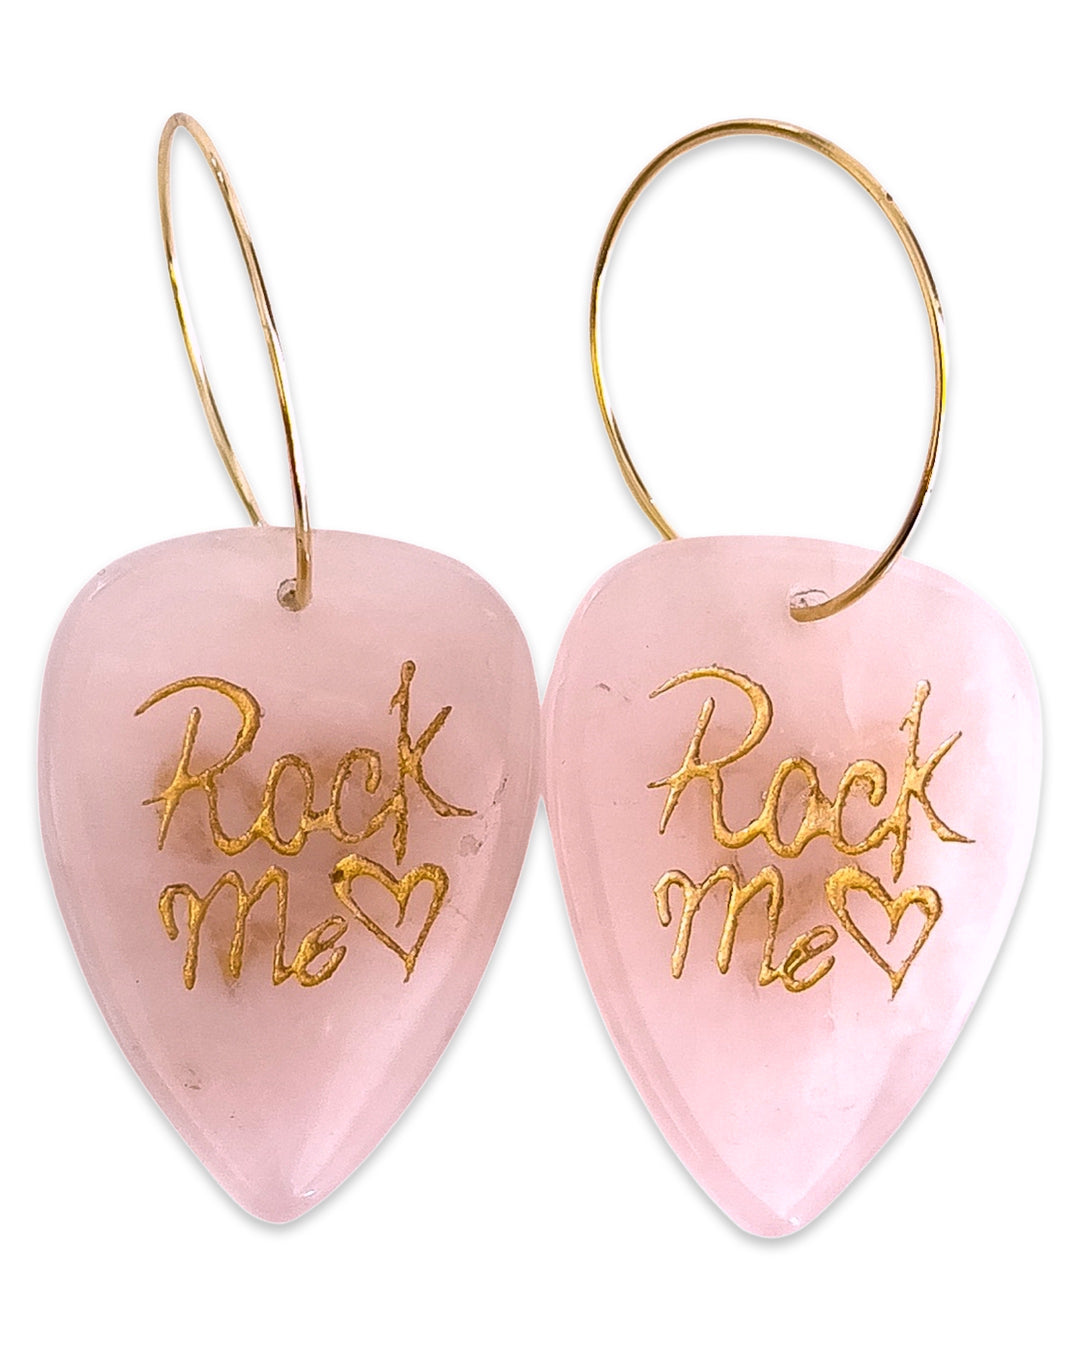 Rock Me Rose Quartz Stone Single Guitar Pick Earrings